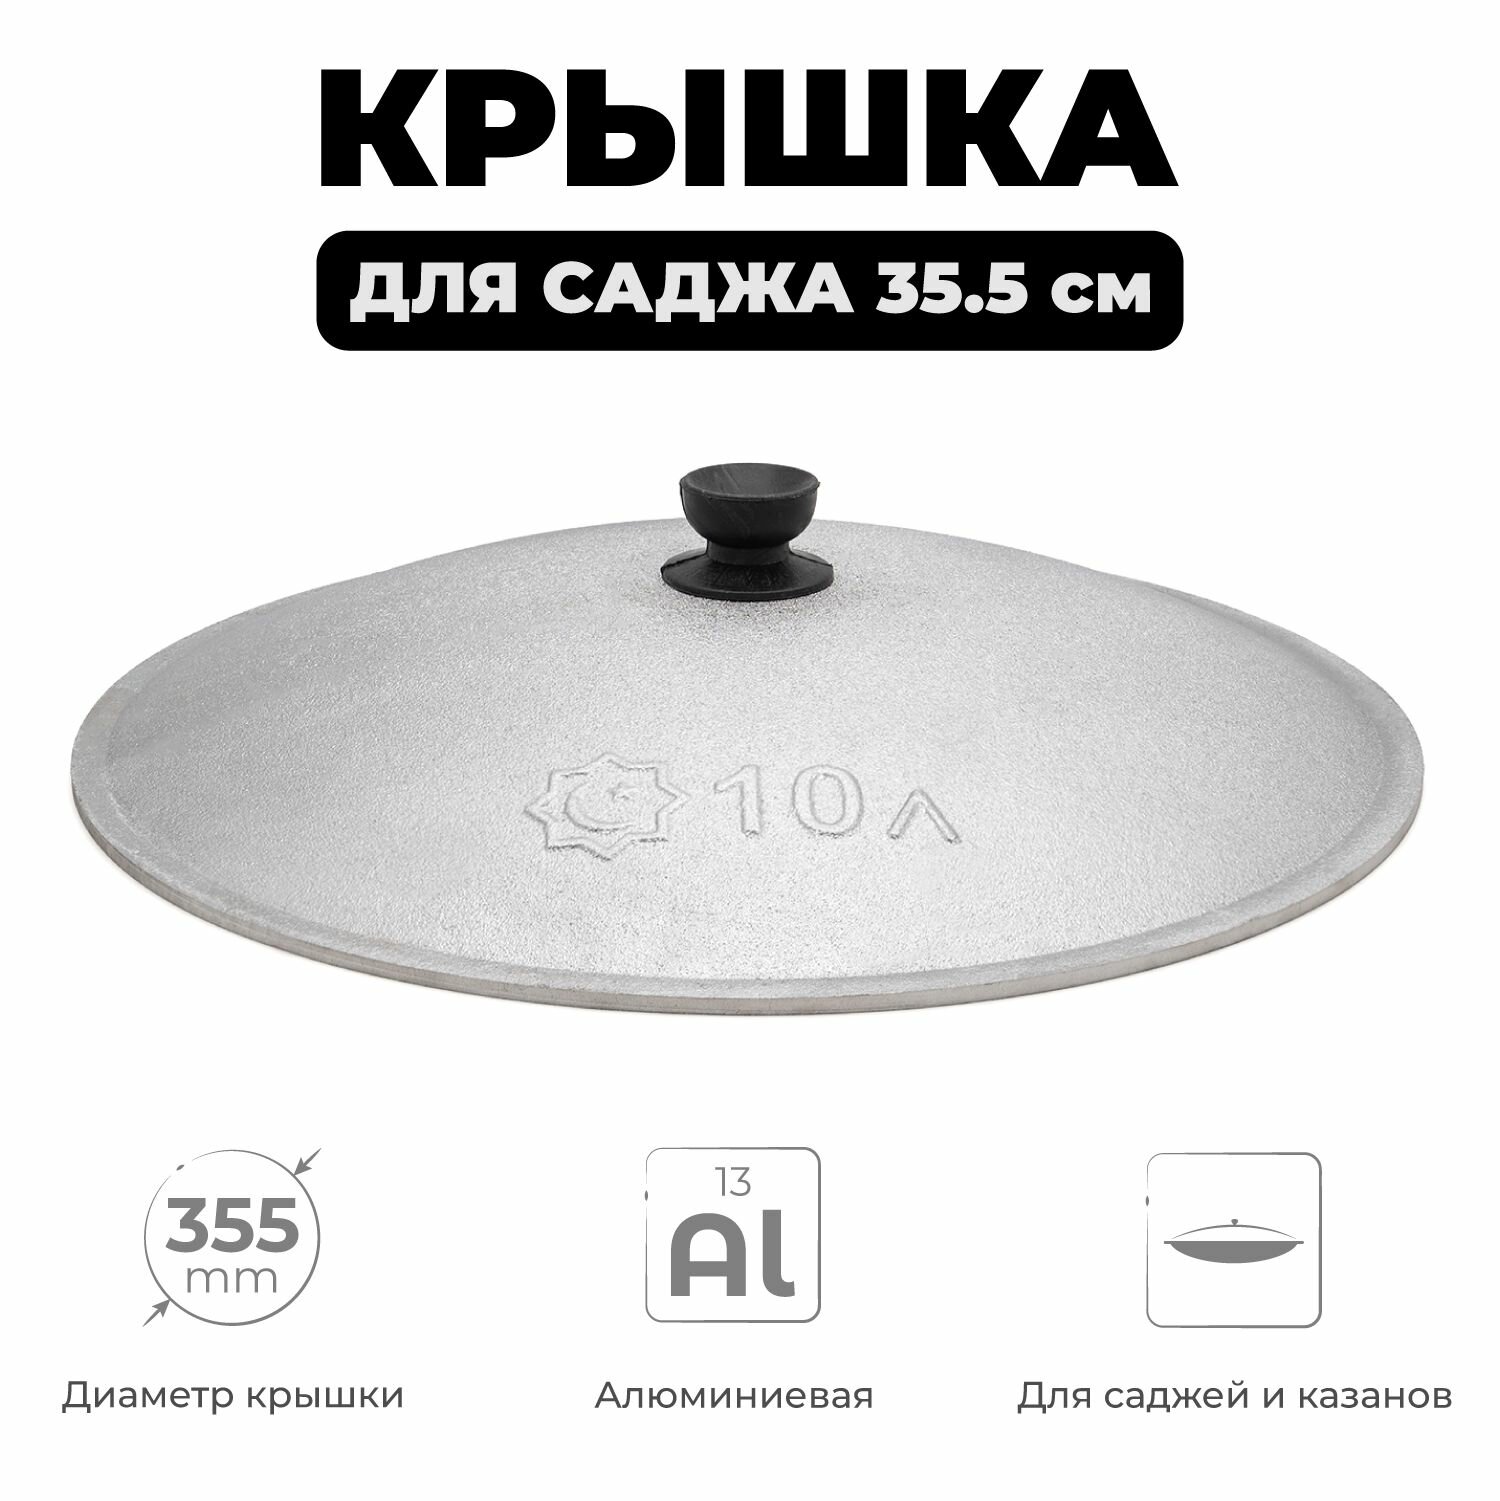 Крышка для саджа алюминиевая, диаметр 35,5 см, крышка для узбекского саджа